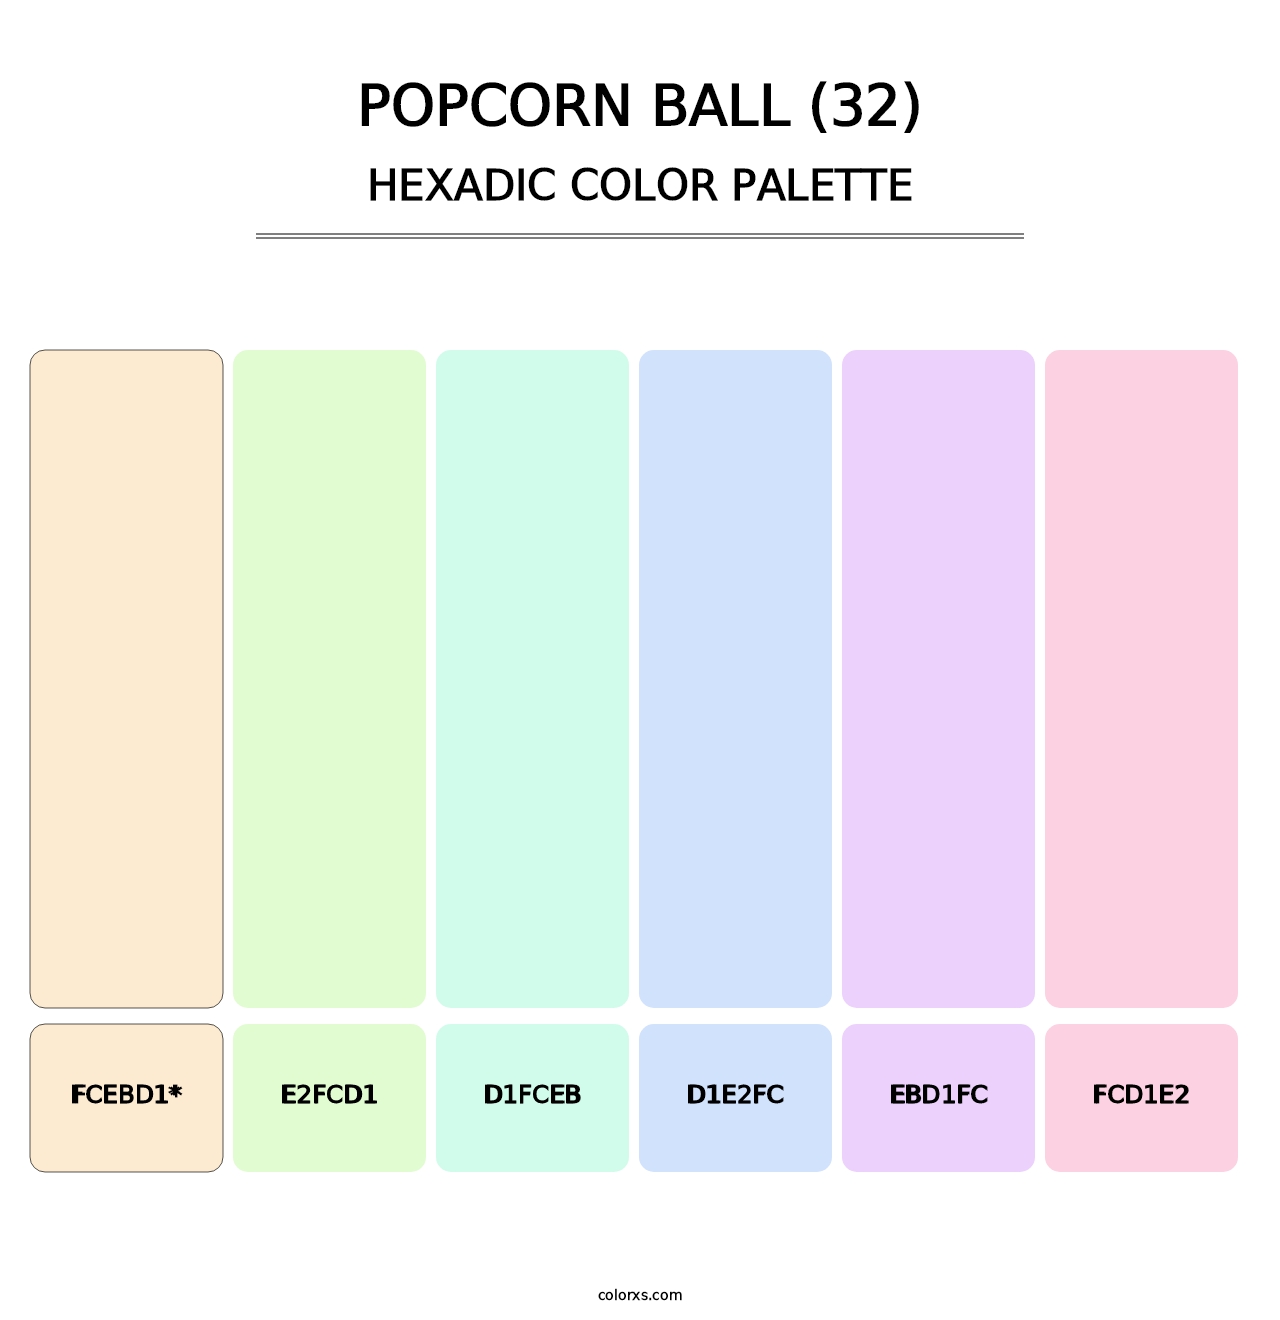 Popcorn Ball (32) - Hexadic Color Palette